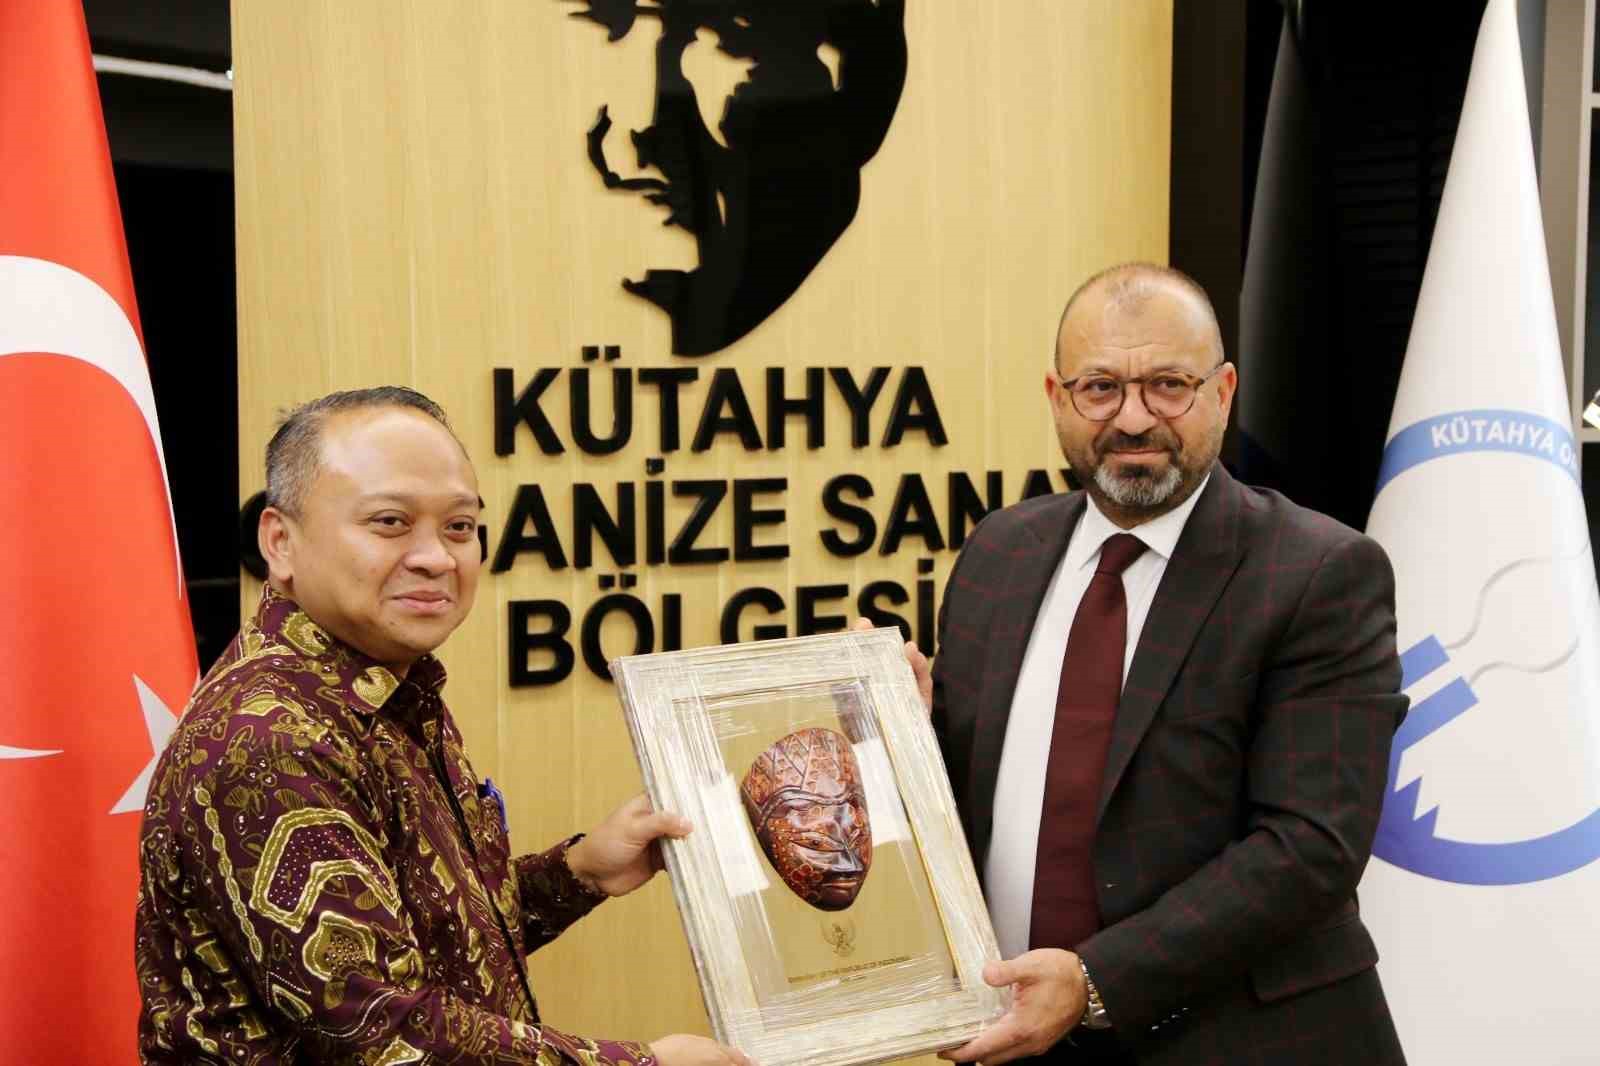 Endonezya Büyükelçisi, Kütahya Organize Sanayi Bölgesi Yönetimini ziyaret etti